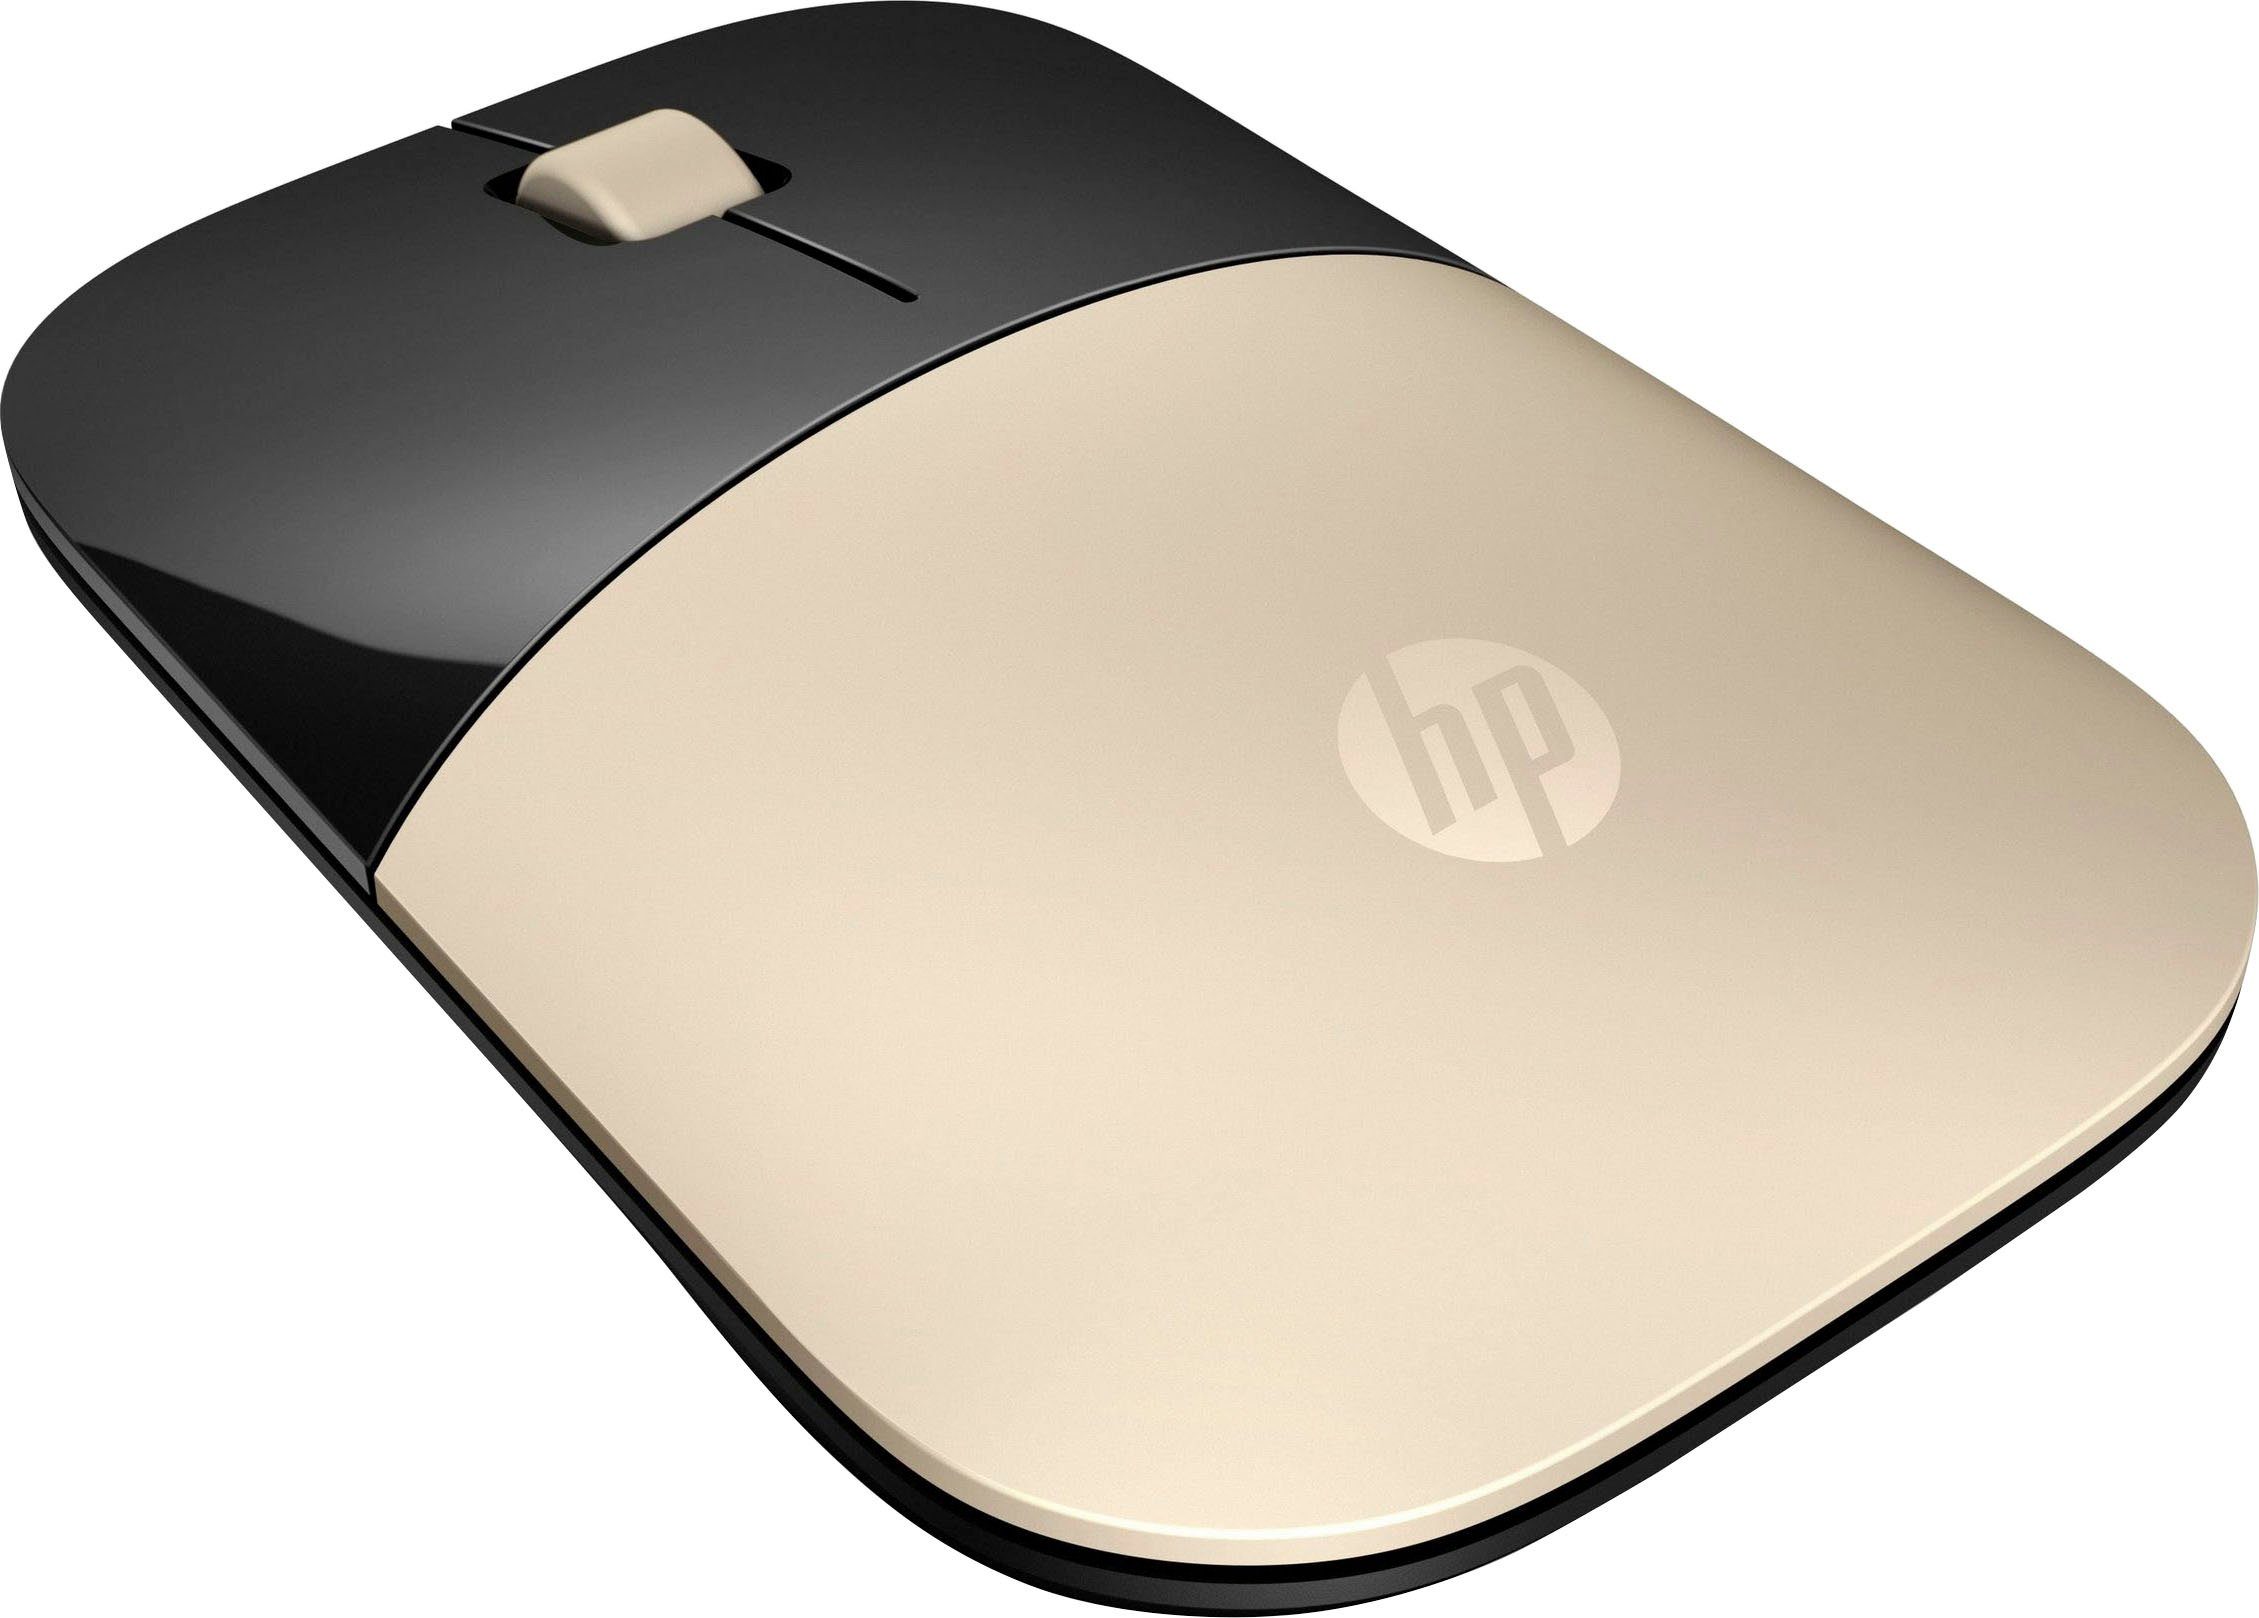 Verkauf von Originalprodukten läuft! HP Z3700 Maus goldfarben/schwarz